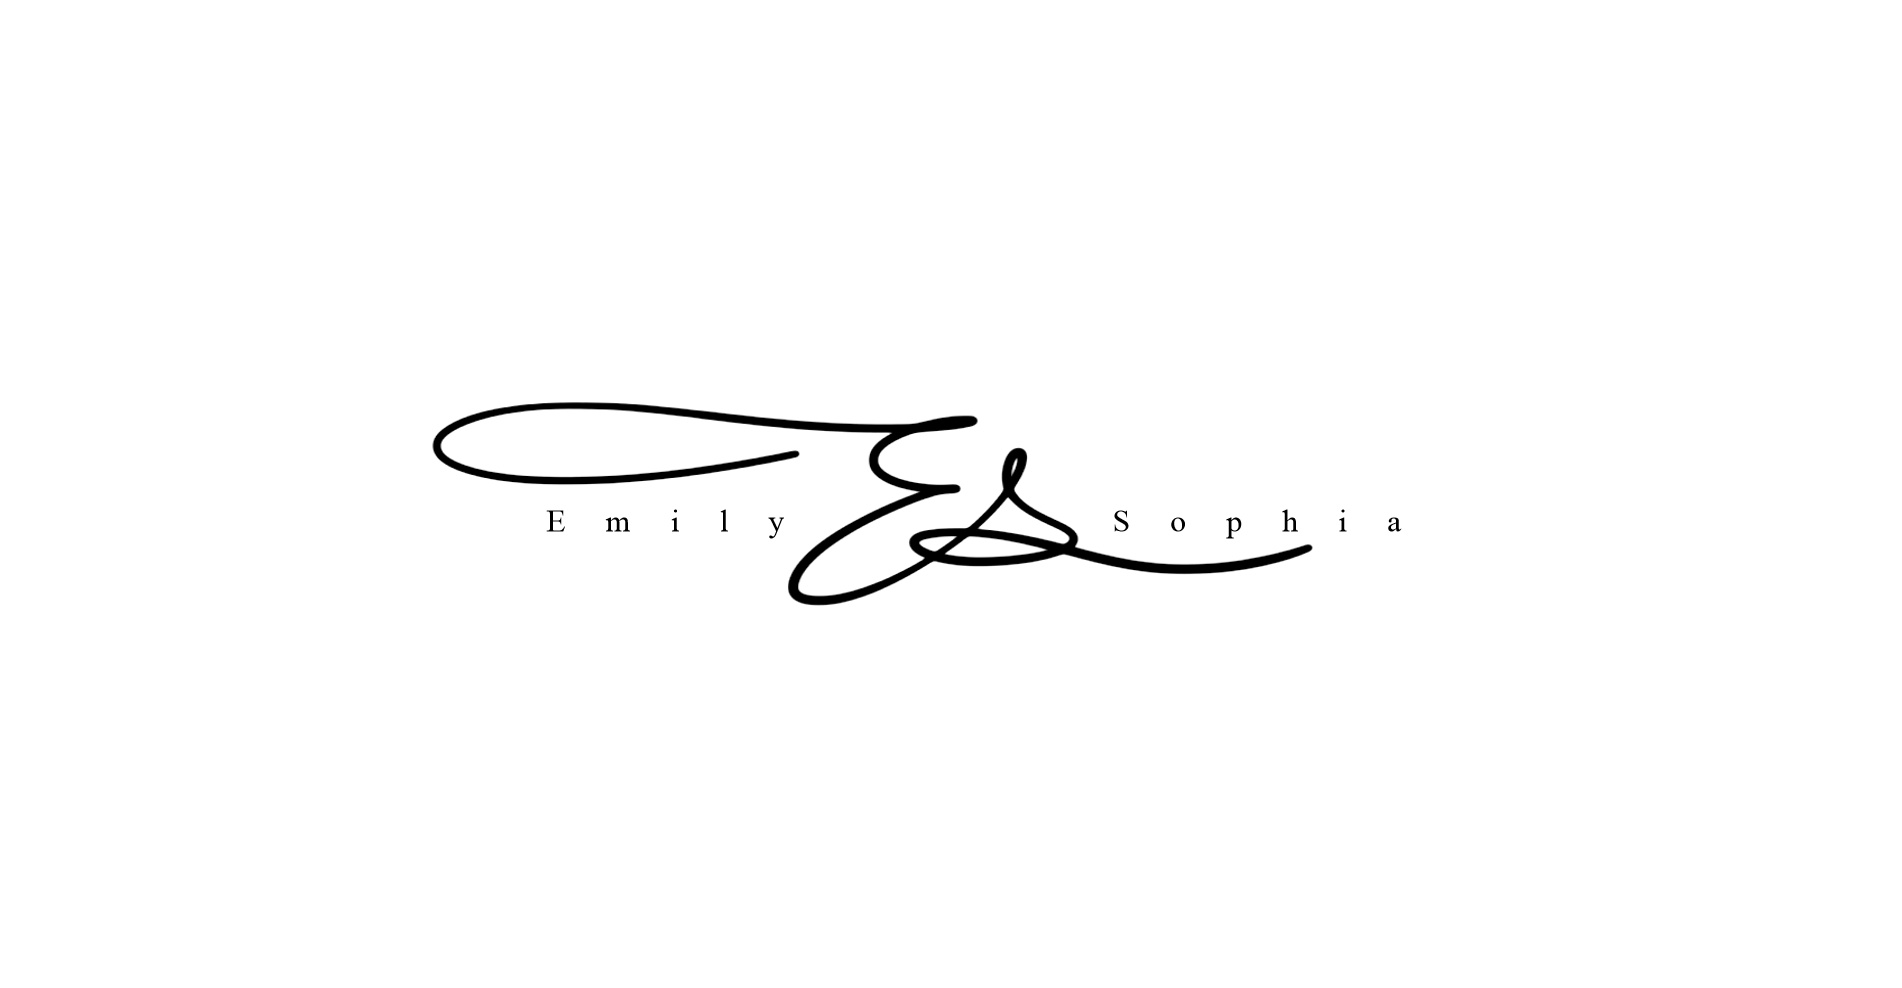 英文手写标志设计丨纯手写丨signature logo design